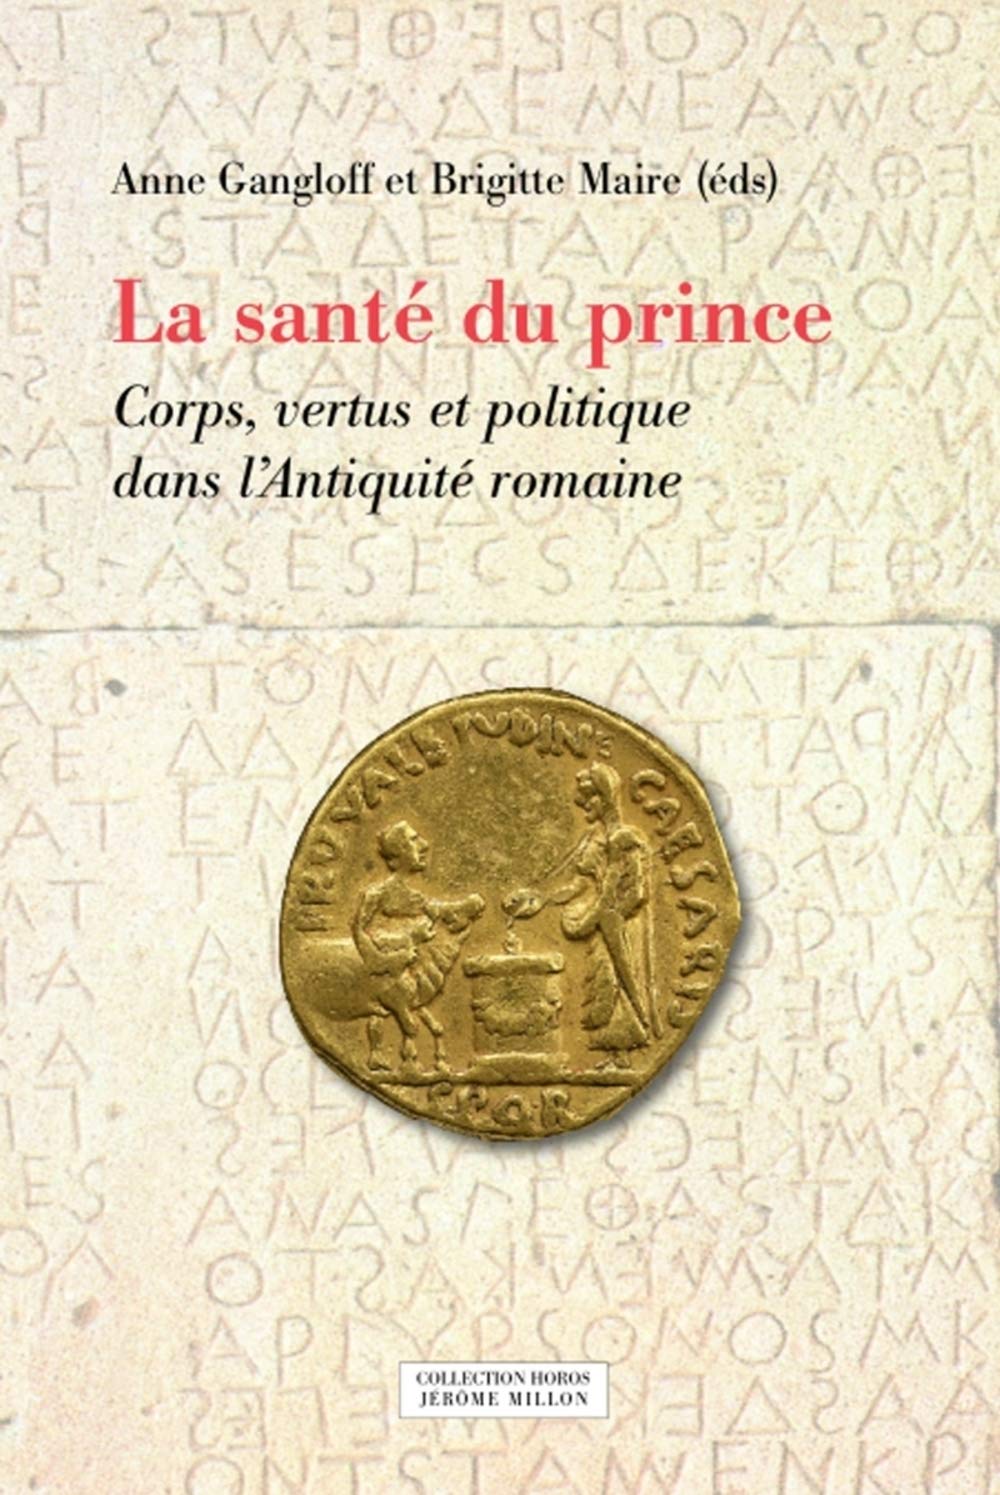 La santé du prince. Corps, vertus et politique dans l'Antiquité romaine, 2020, 276 p.